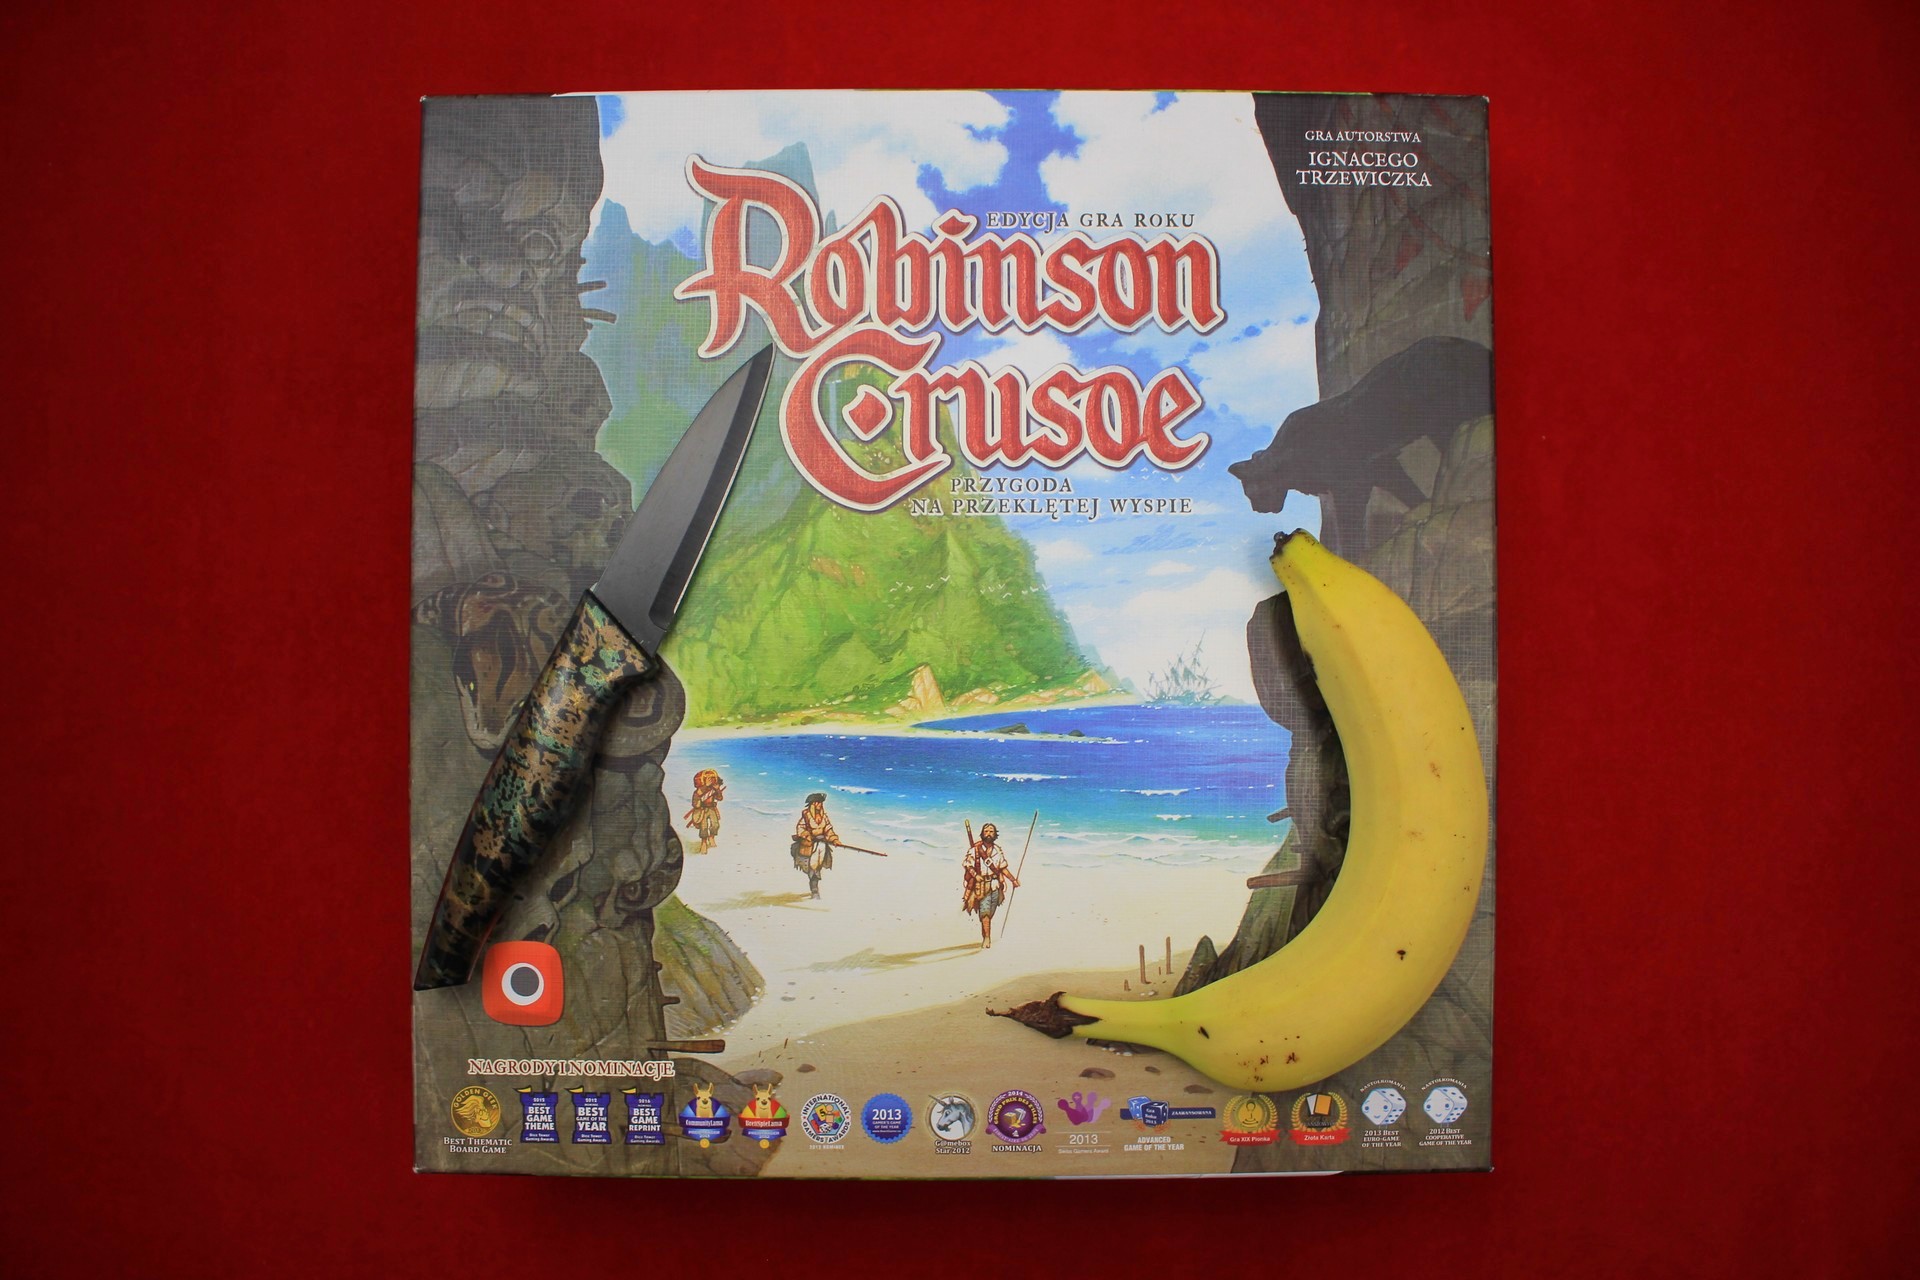 Robinson Crusoe: Przygoda na przeklętej wyspie - recenzja